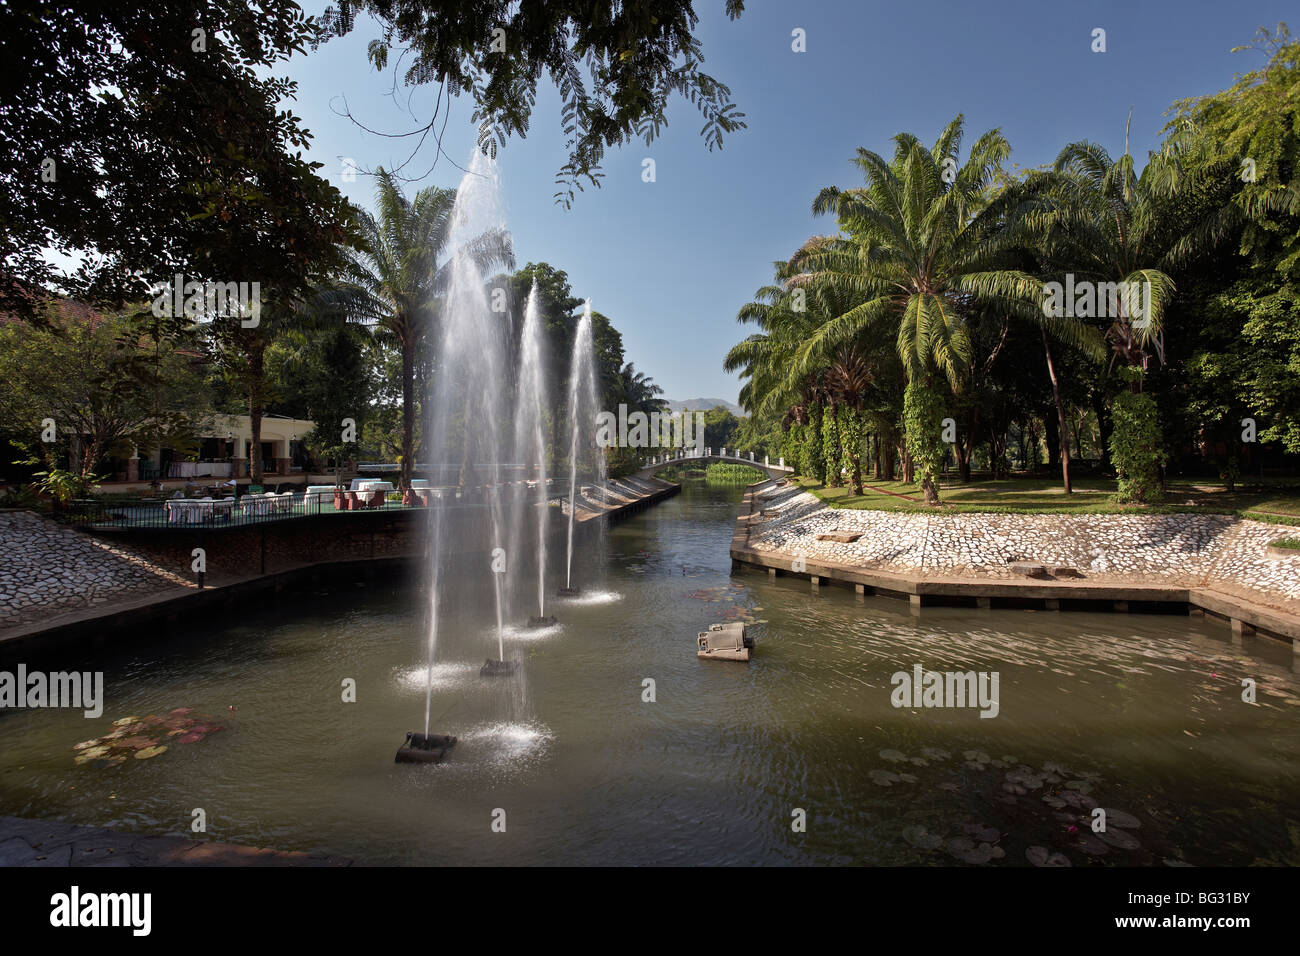 Brunnen Feature auf dem Gelände eines Thailand Hotels anzeigen S. E. Asien Thailand Stockfoto